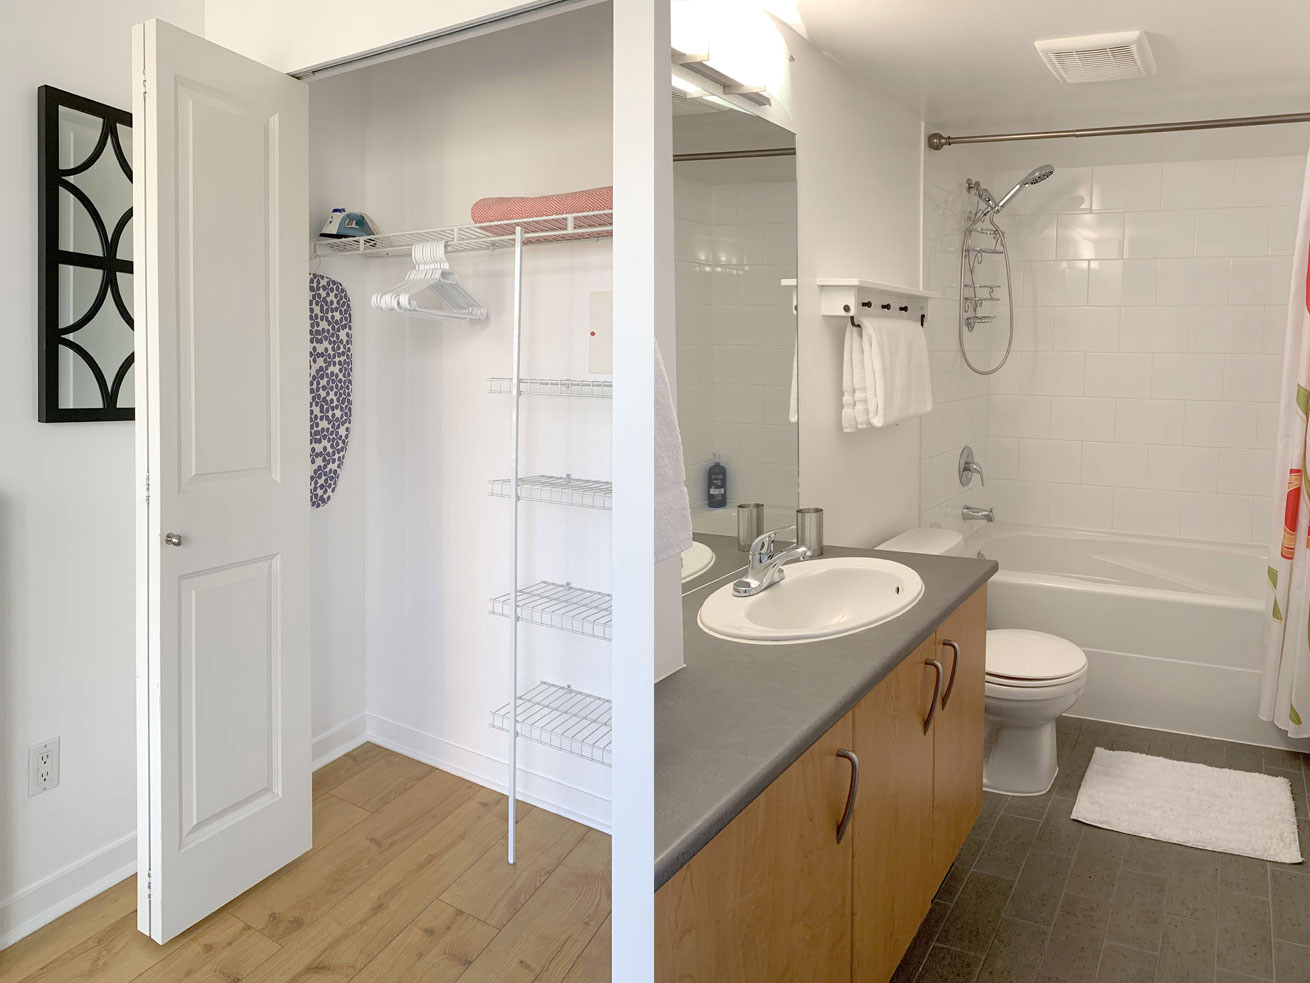 Vancouver apartments for rent oscar studio closet bathroom